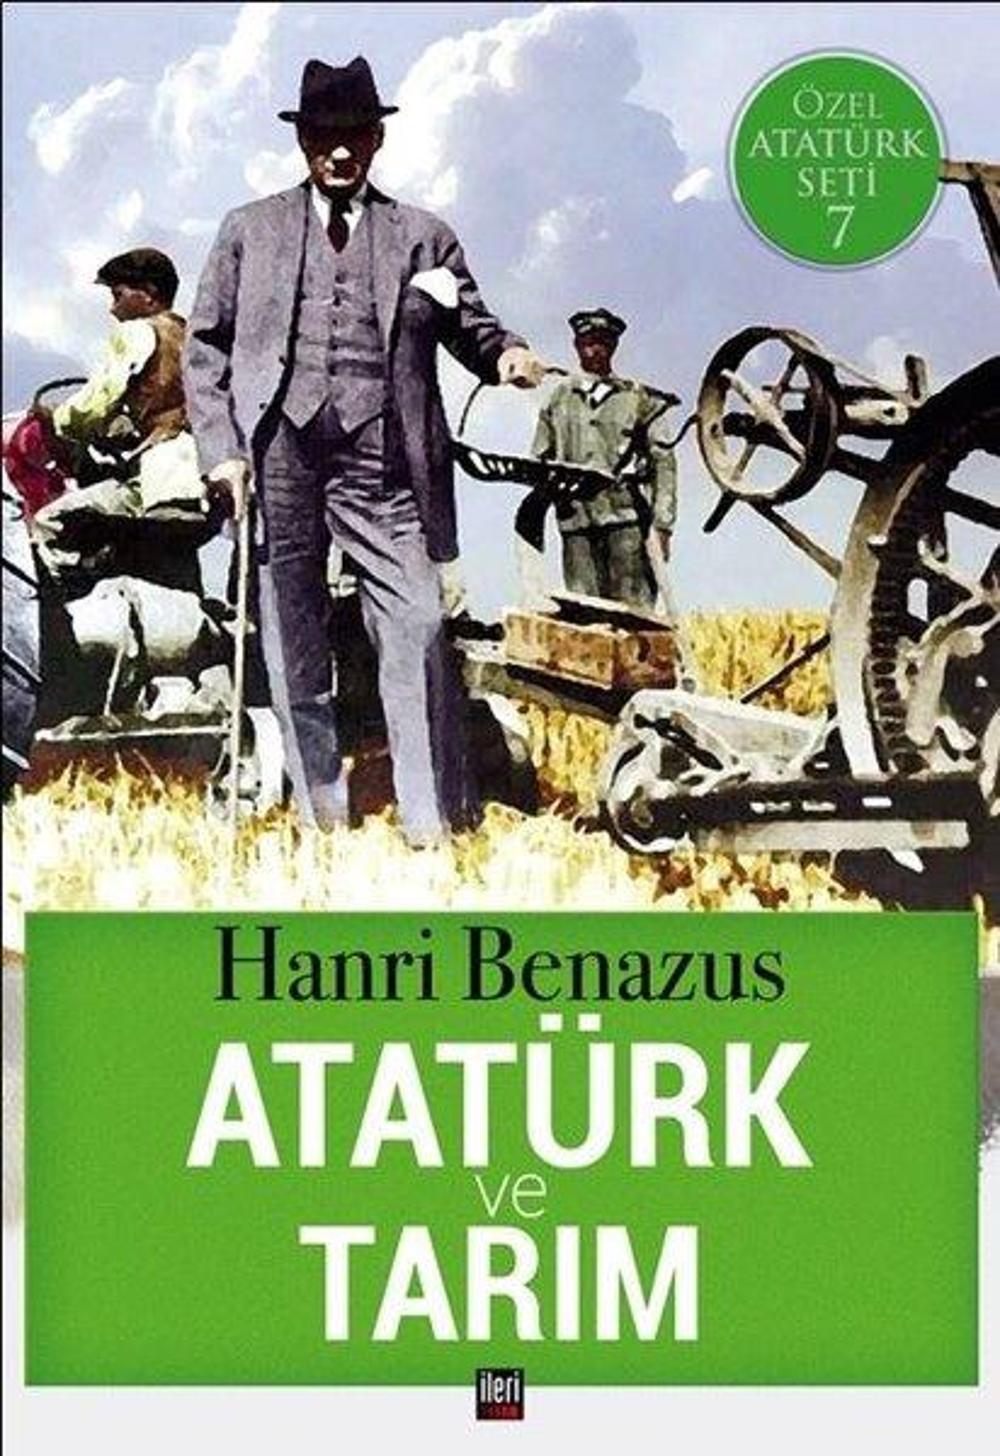 Atatürk ve Tarım-Özel Atatürk Seti 7 | İleri Yayınları